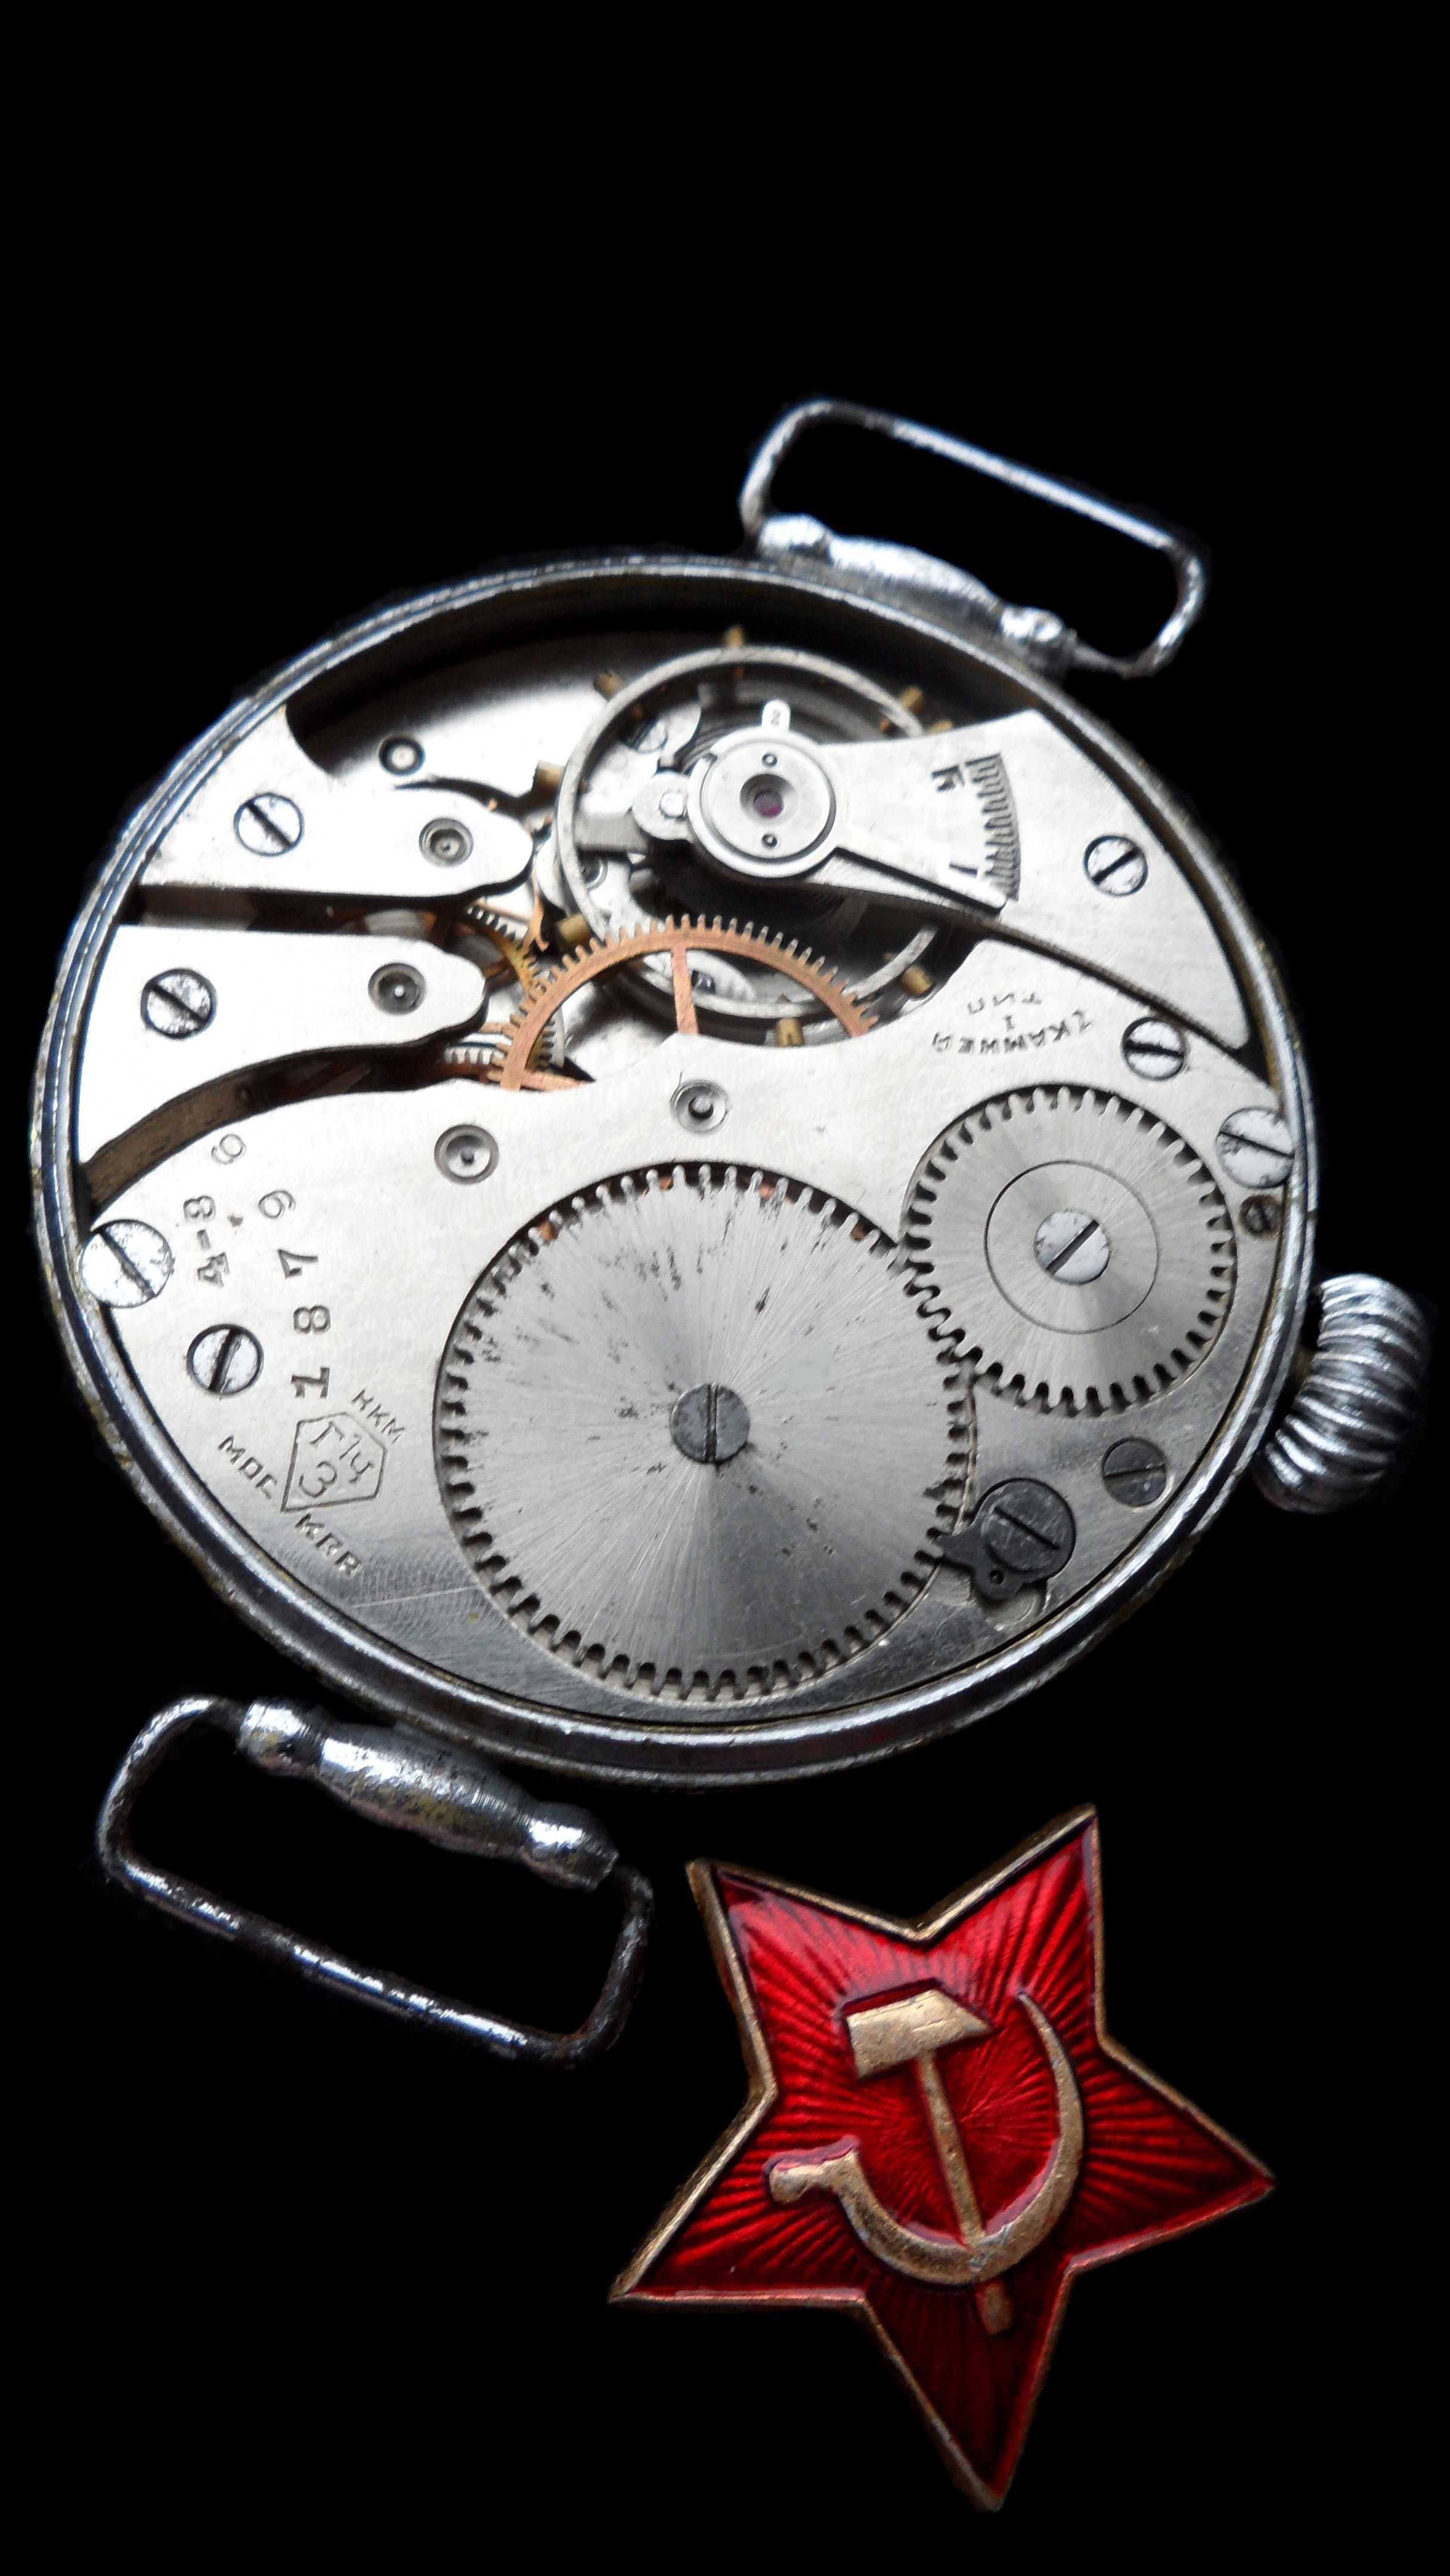 1938 г. часы ВЕЛИКОЙ ОТЕЧЕСТВЕННОЙ ВОЙНЫ, сделано в СССР, механика.